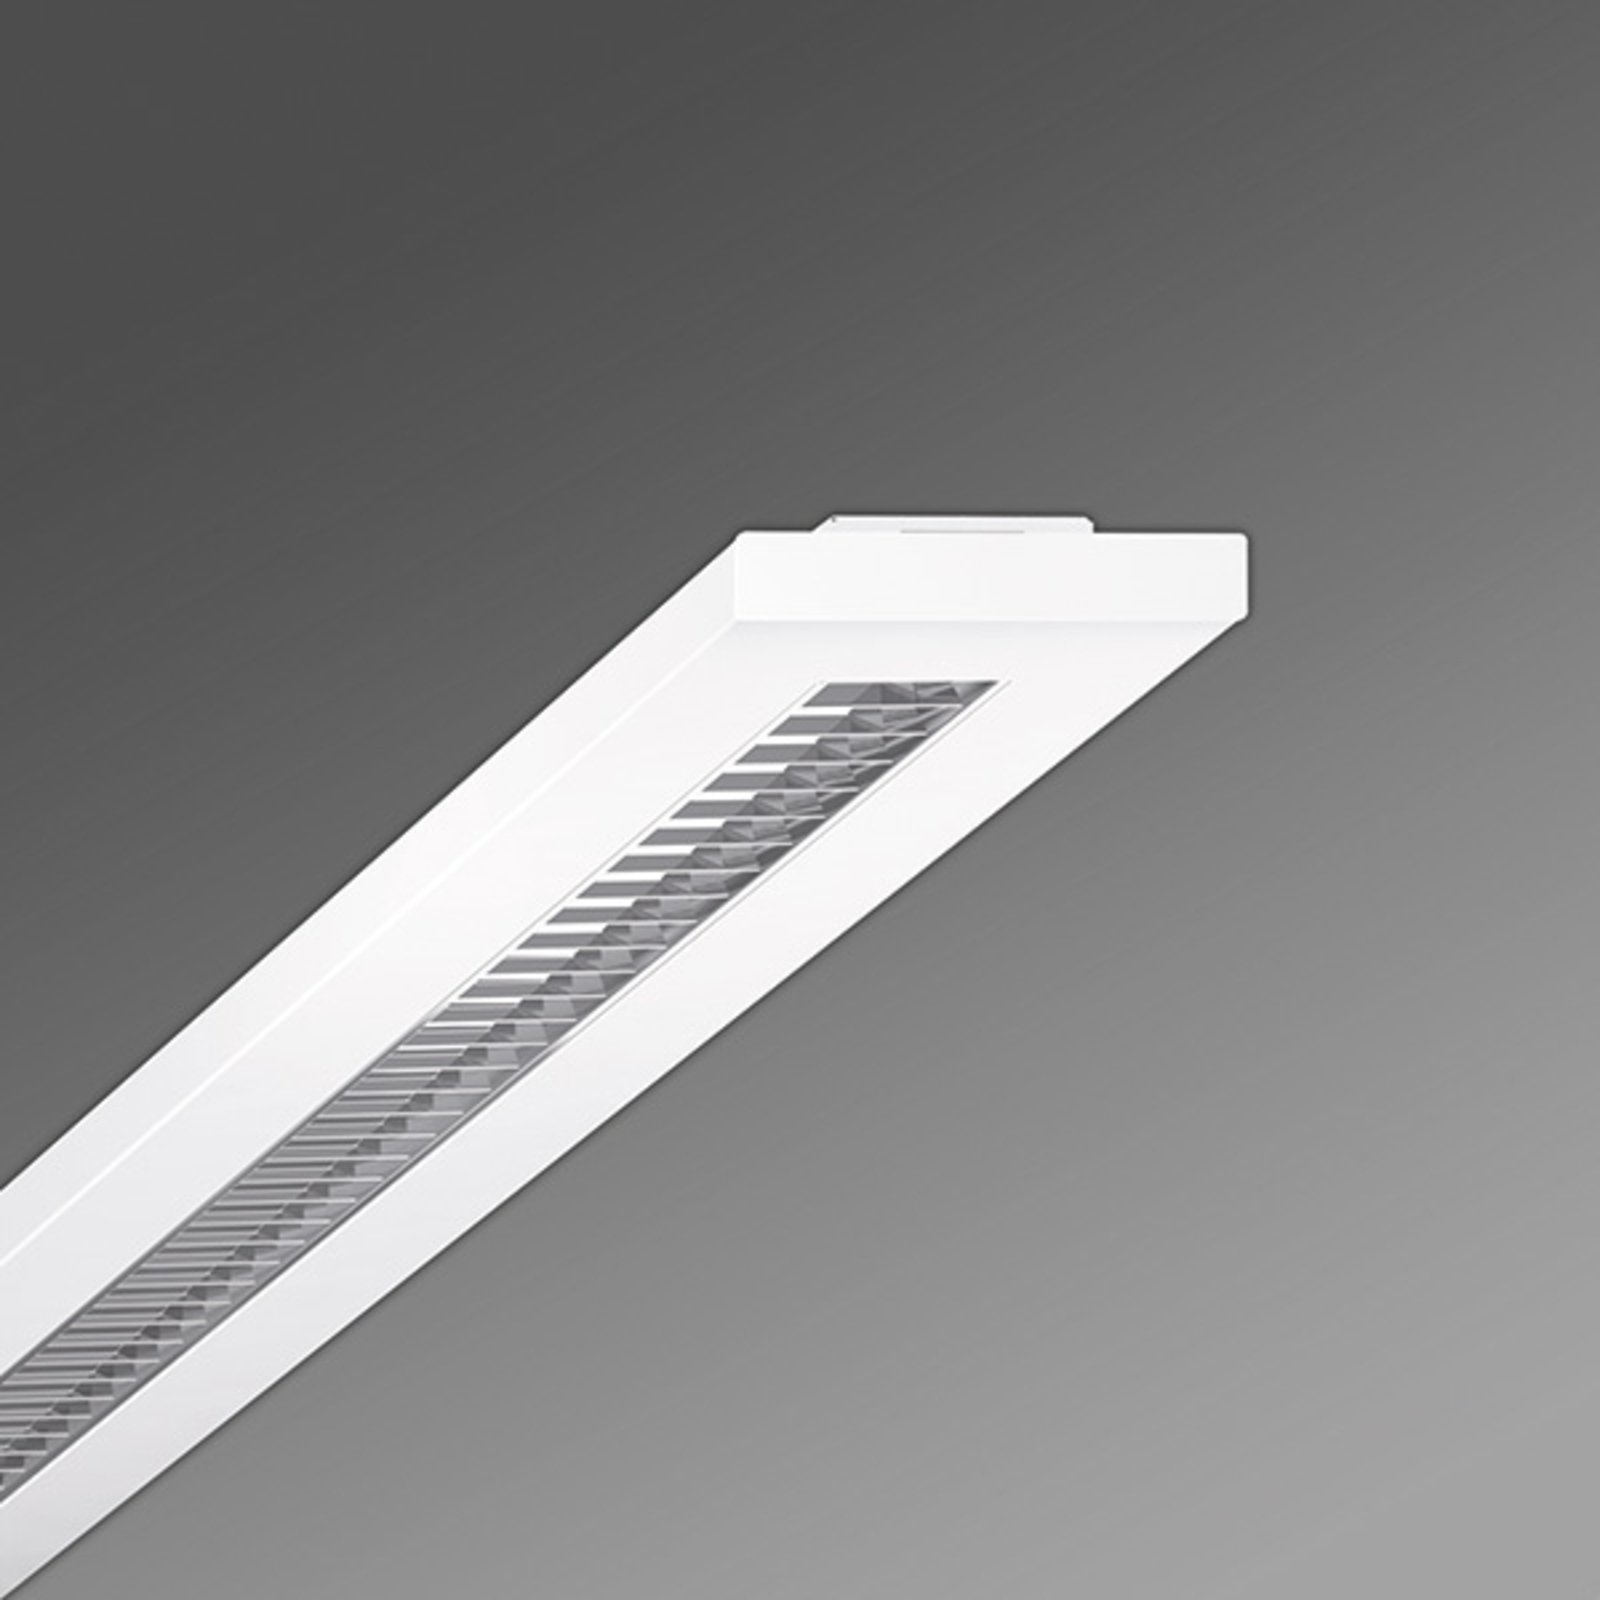 LED-rasterlampe Stail SAX parabolraster 1200-1